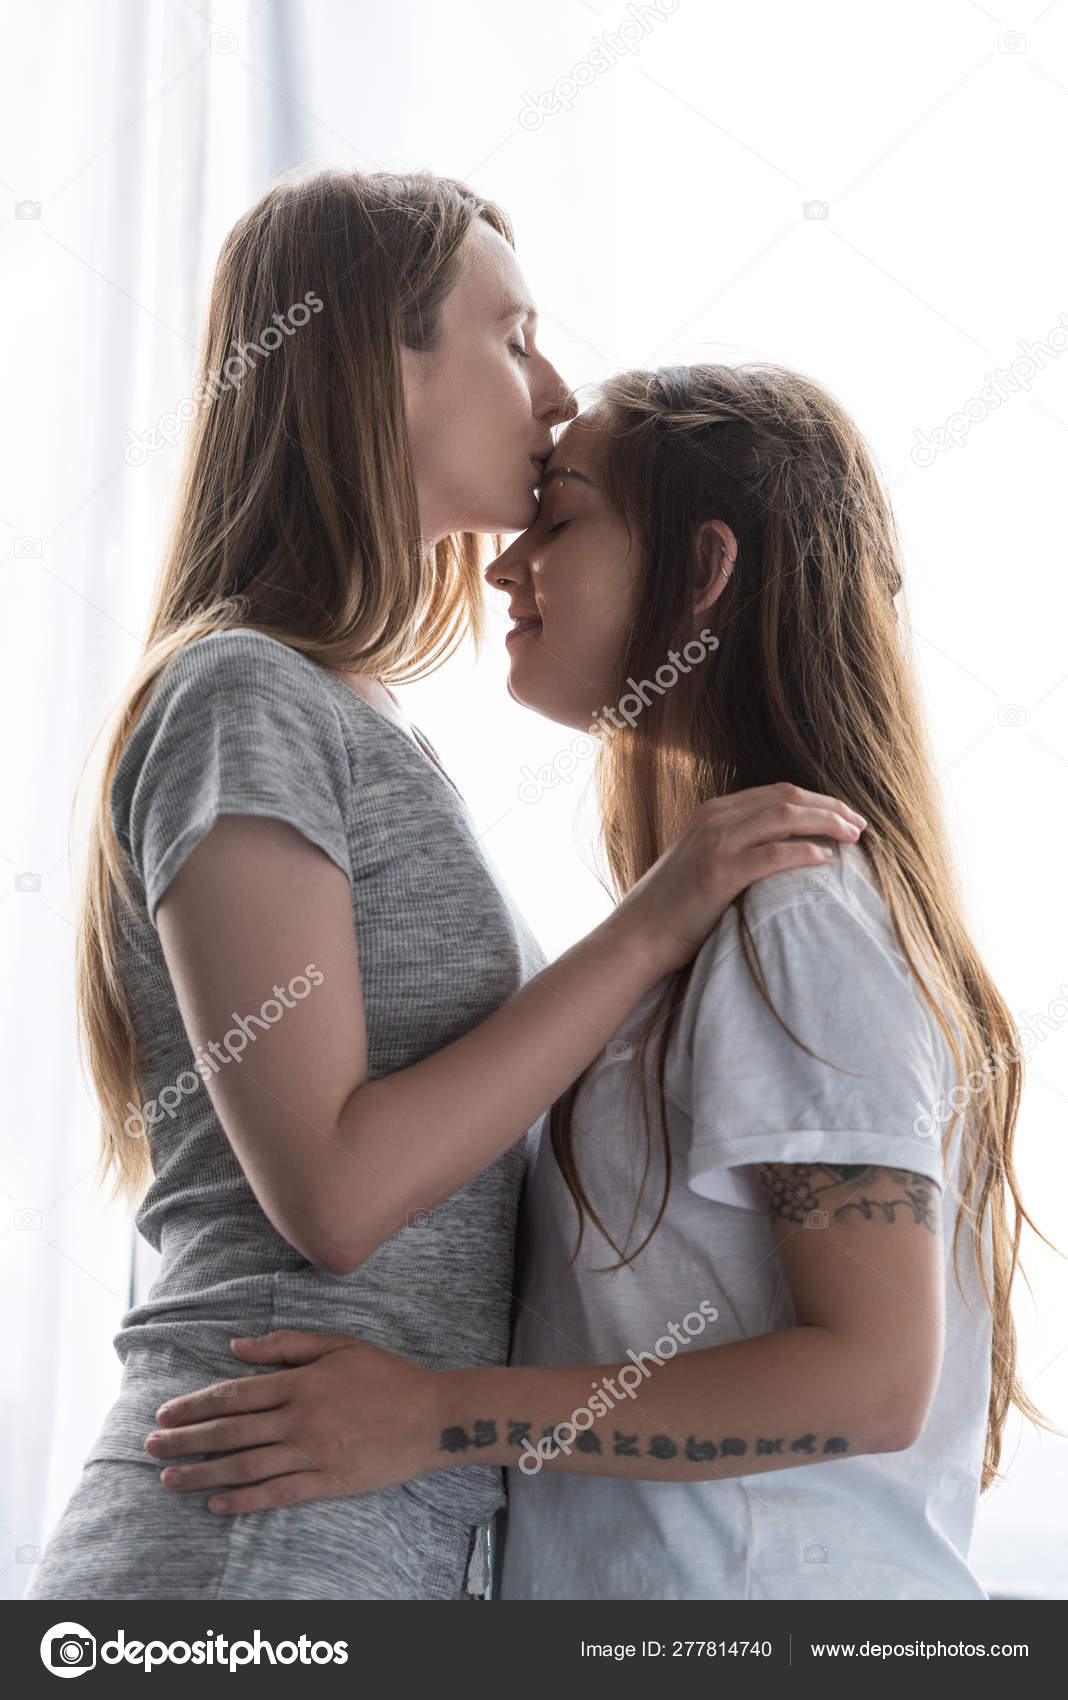 Lesbian Girlfriend Pics